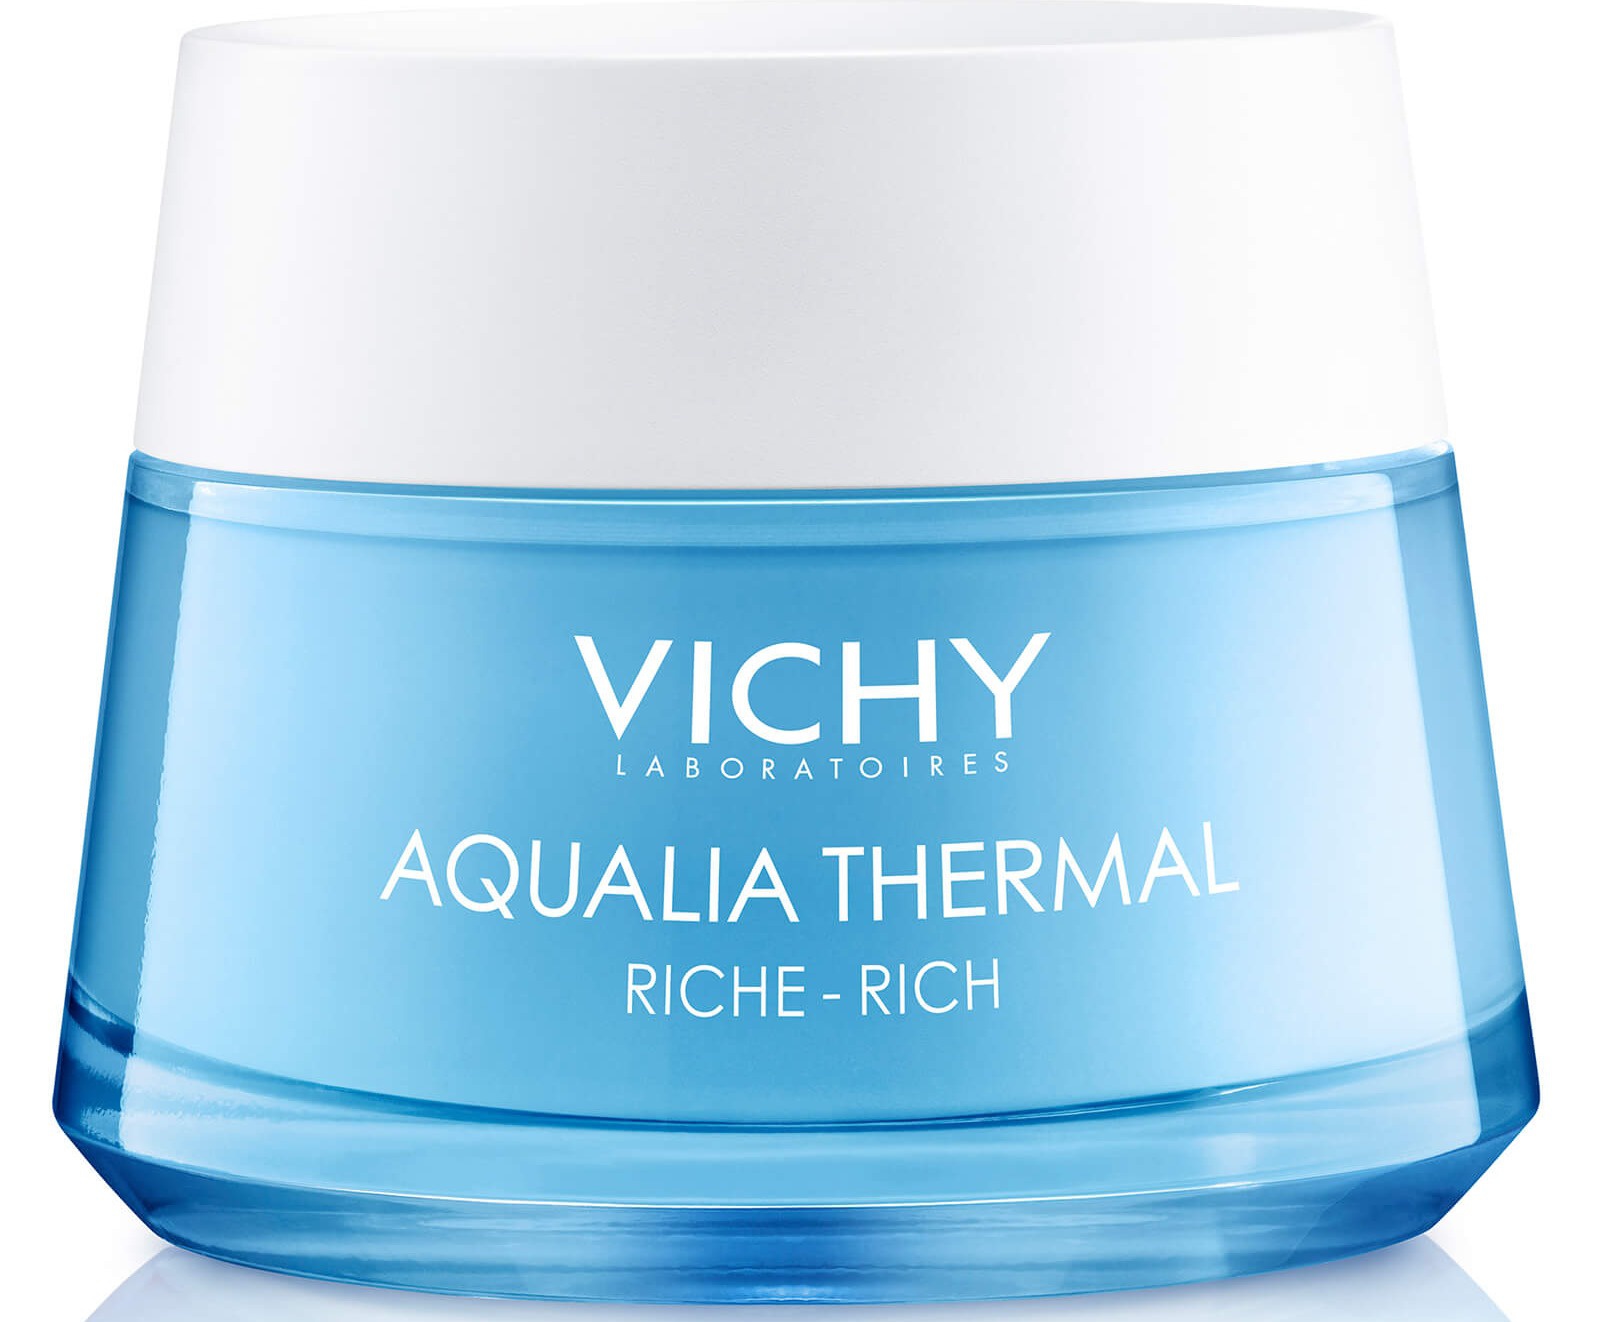 Vichy Aqualia Thermal Rich